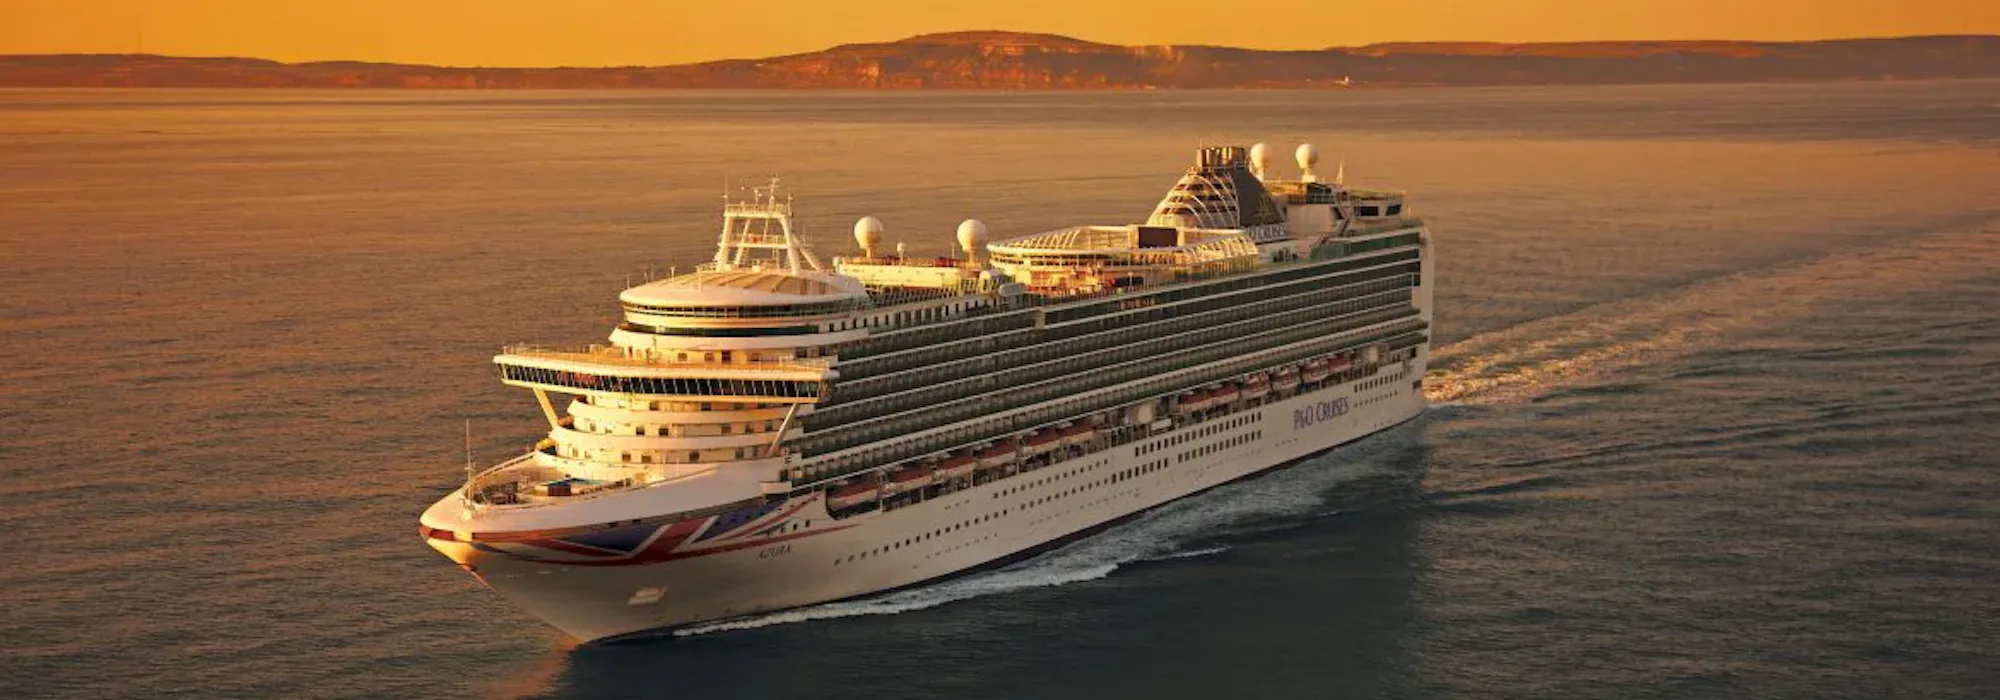 P&O Cruises - Azura